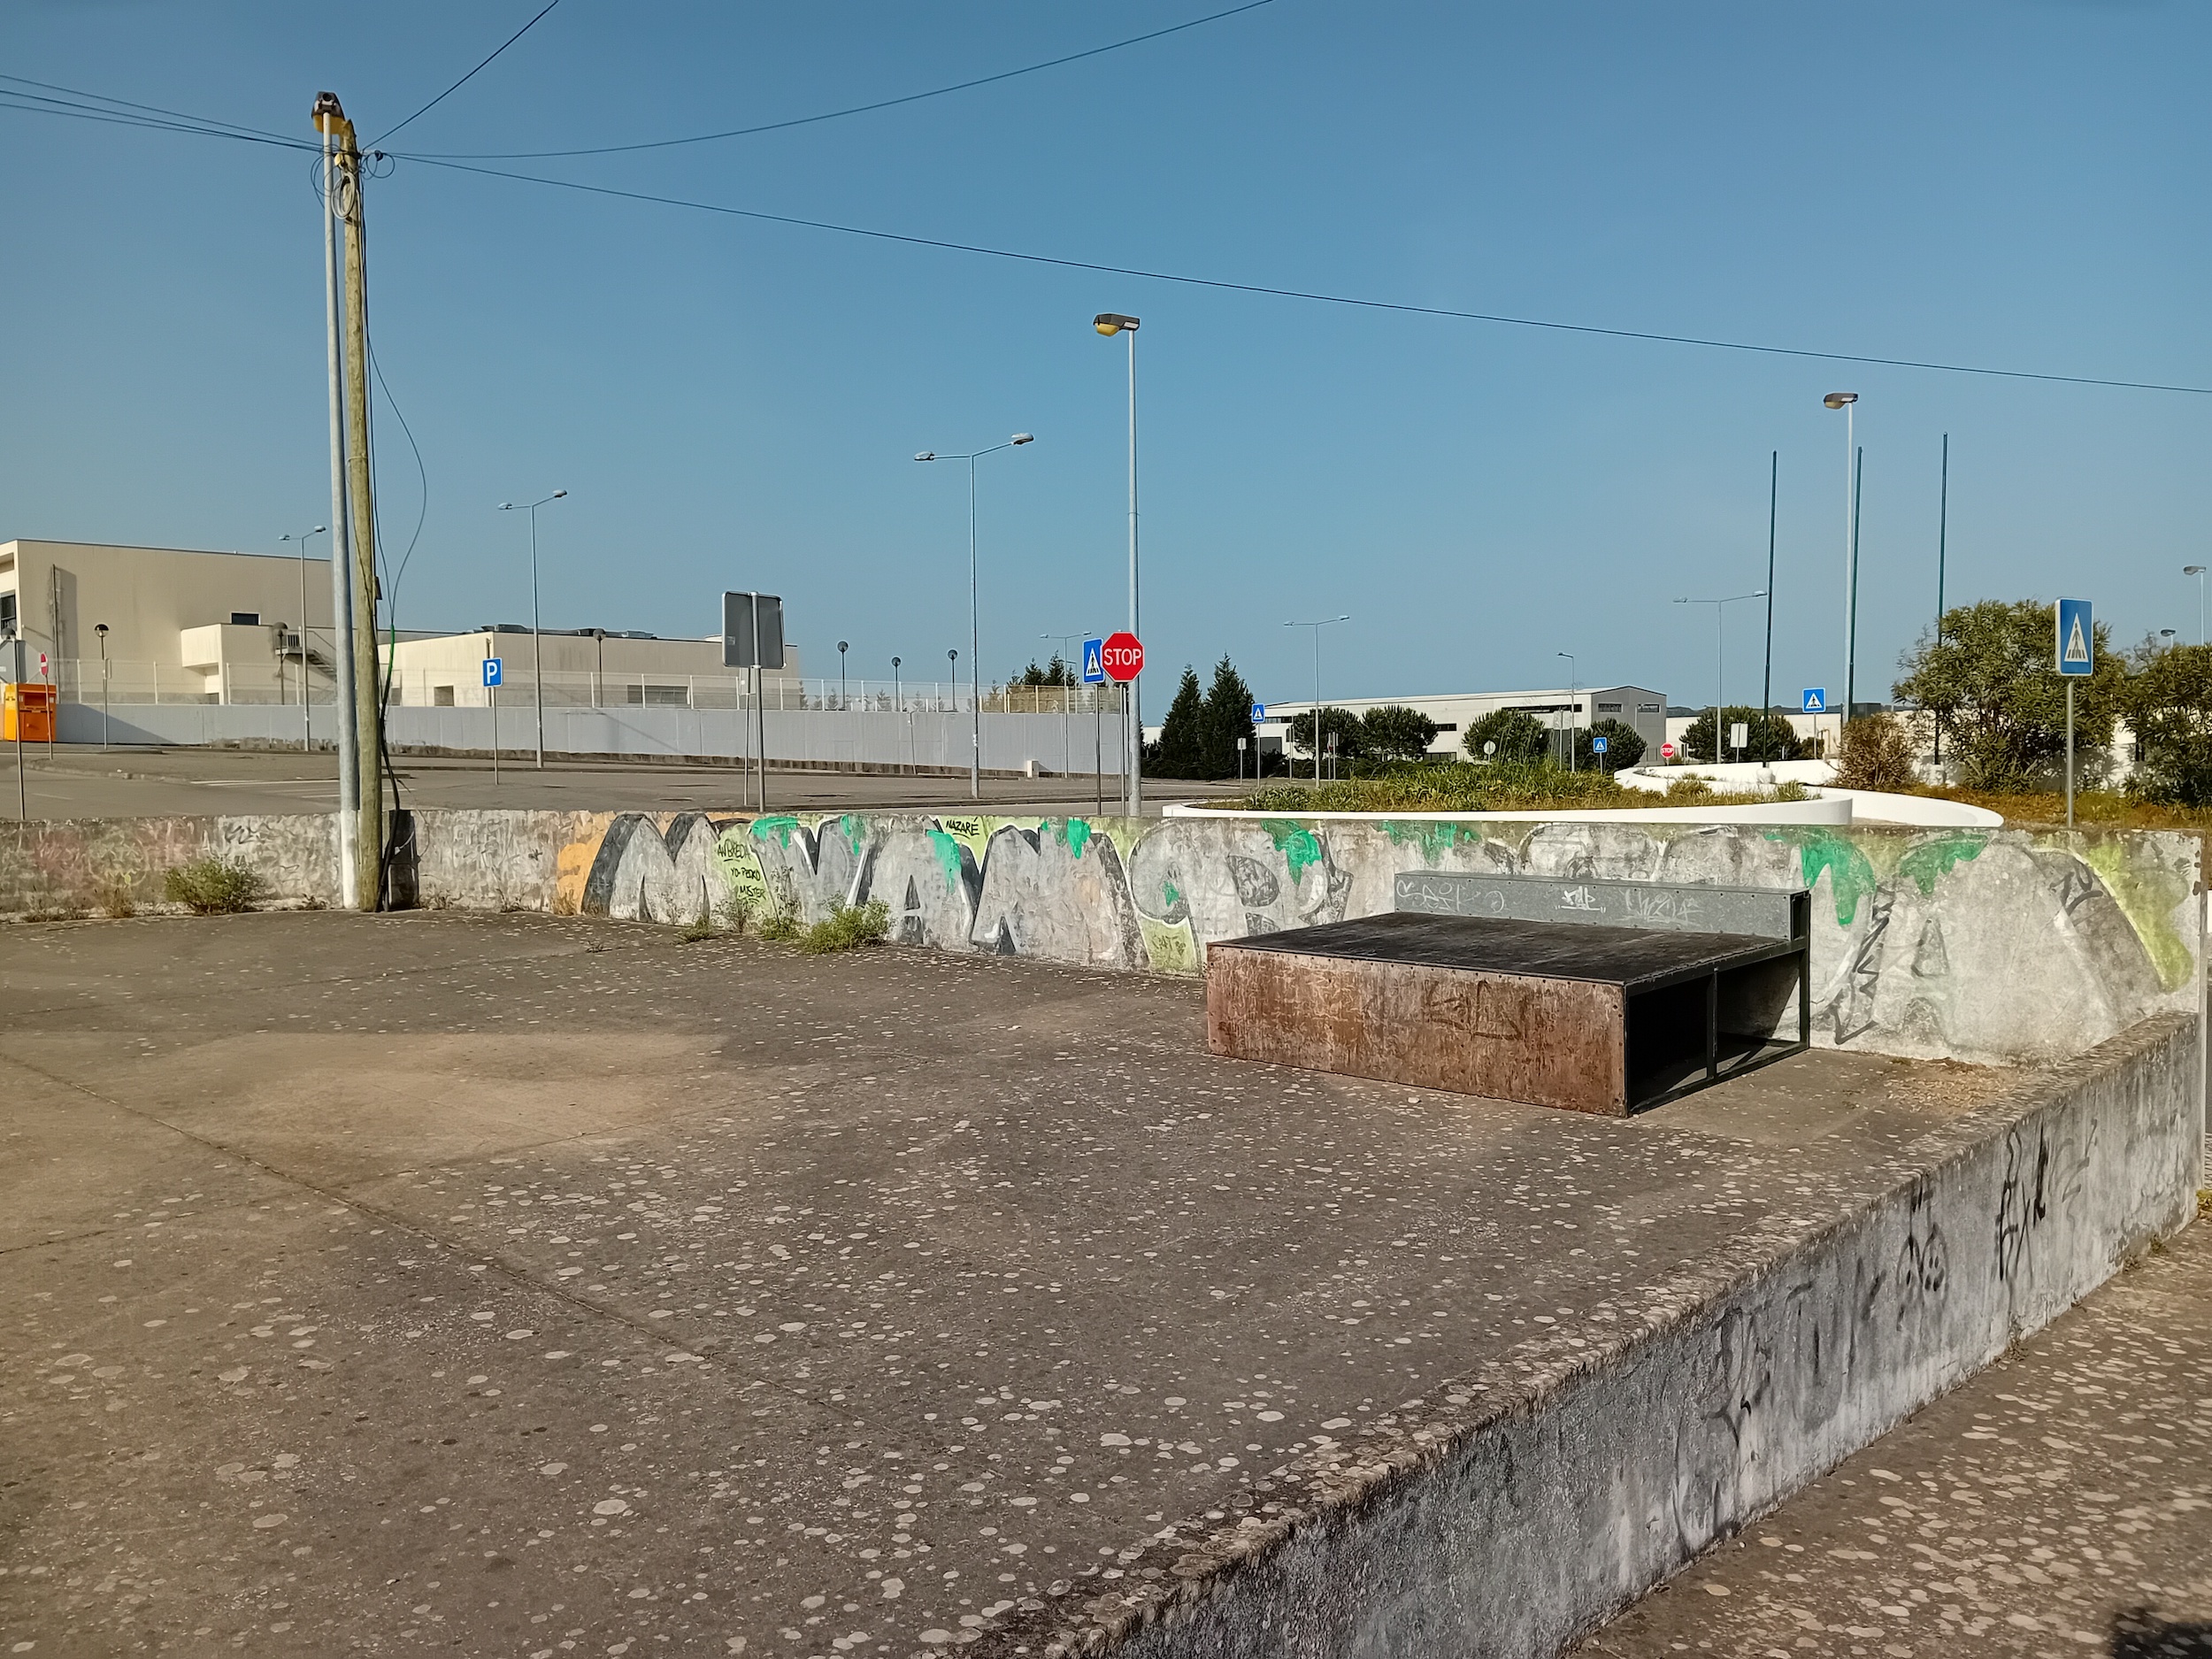 Valado dos Frades skatepark